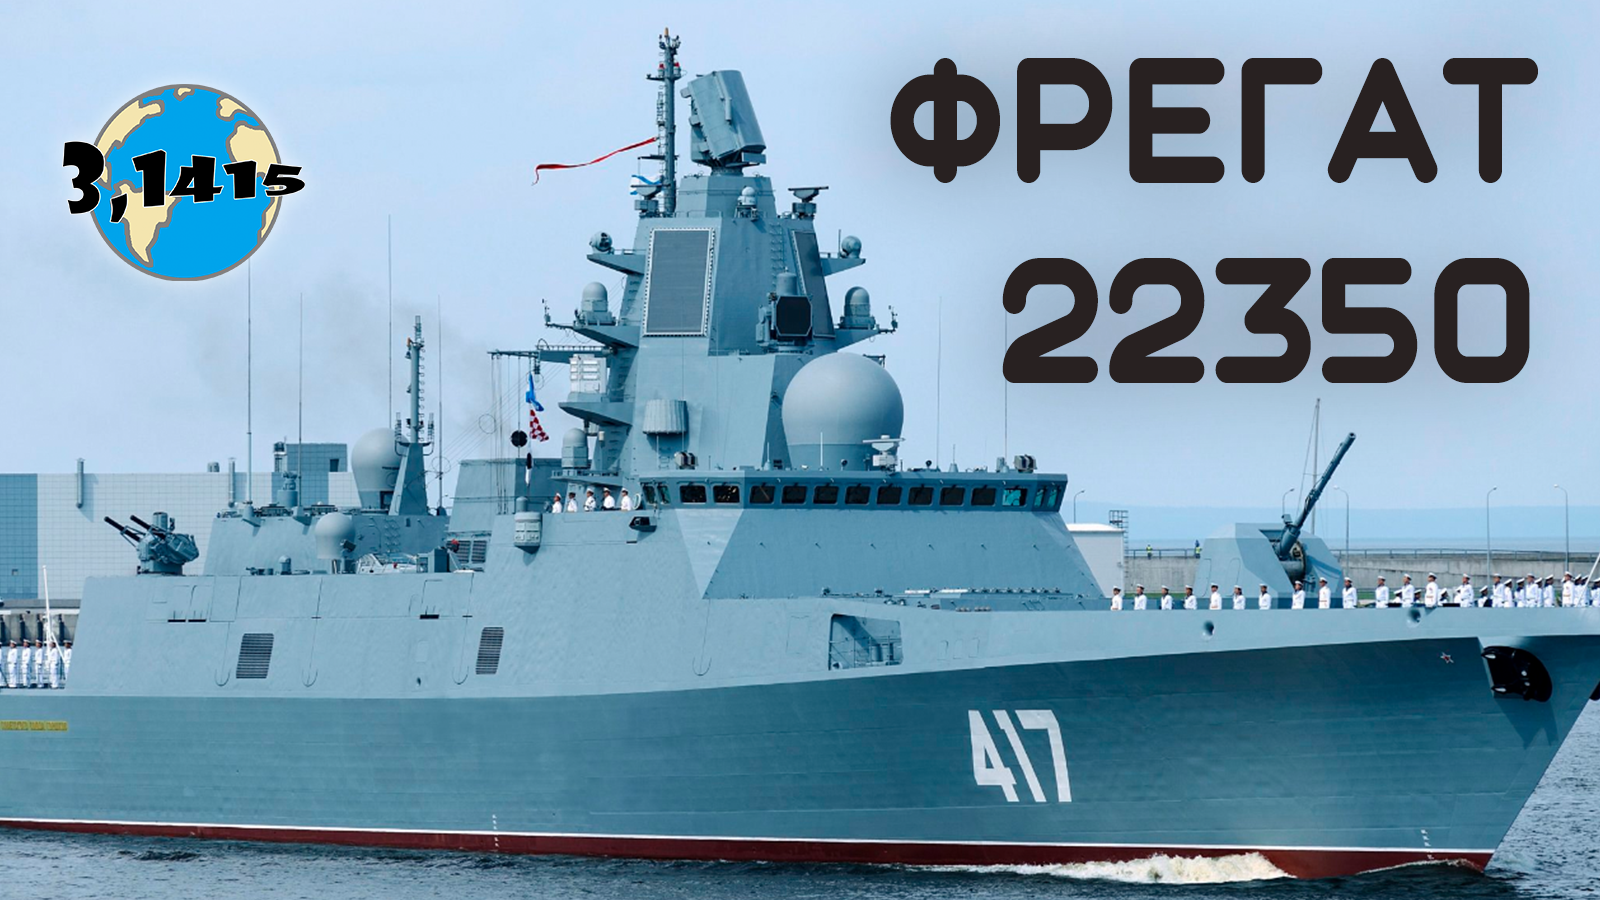 Обзор фрегатов 22350 "Адмирал Горшков". Обновление ВМФ России на 2024 год